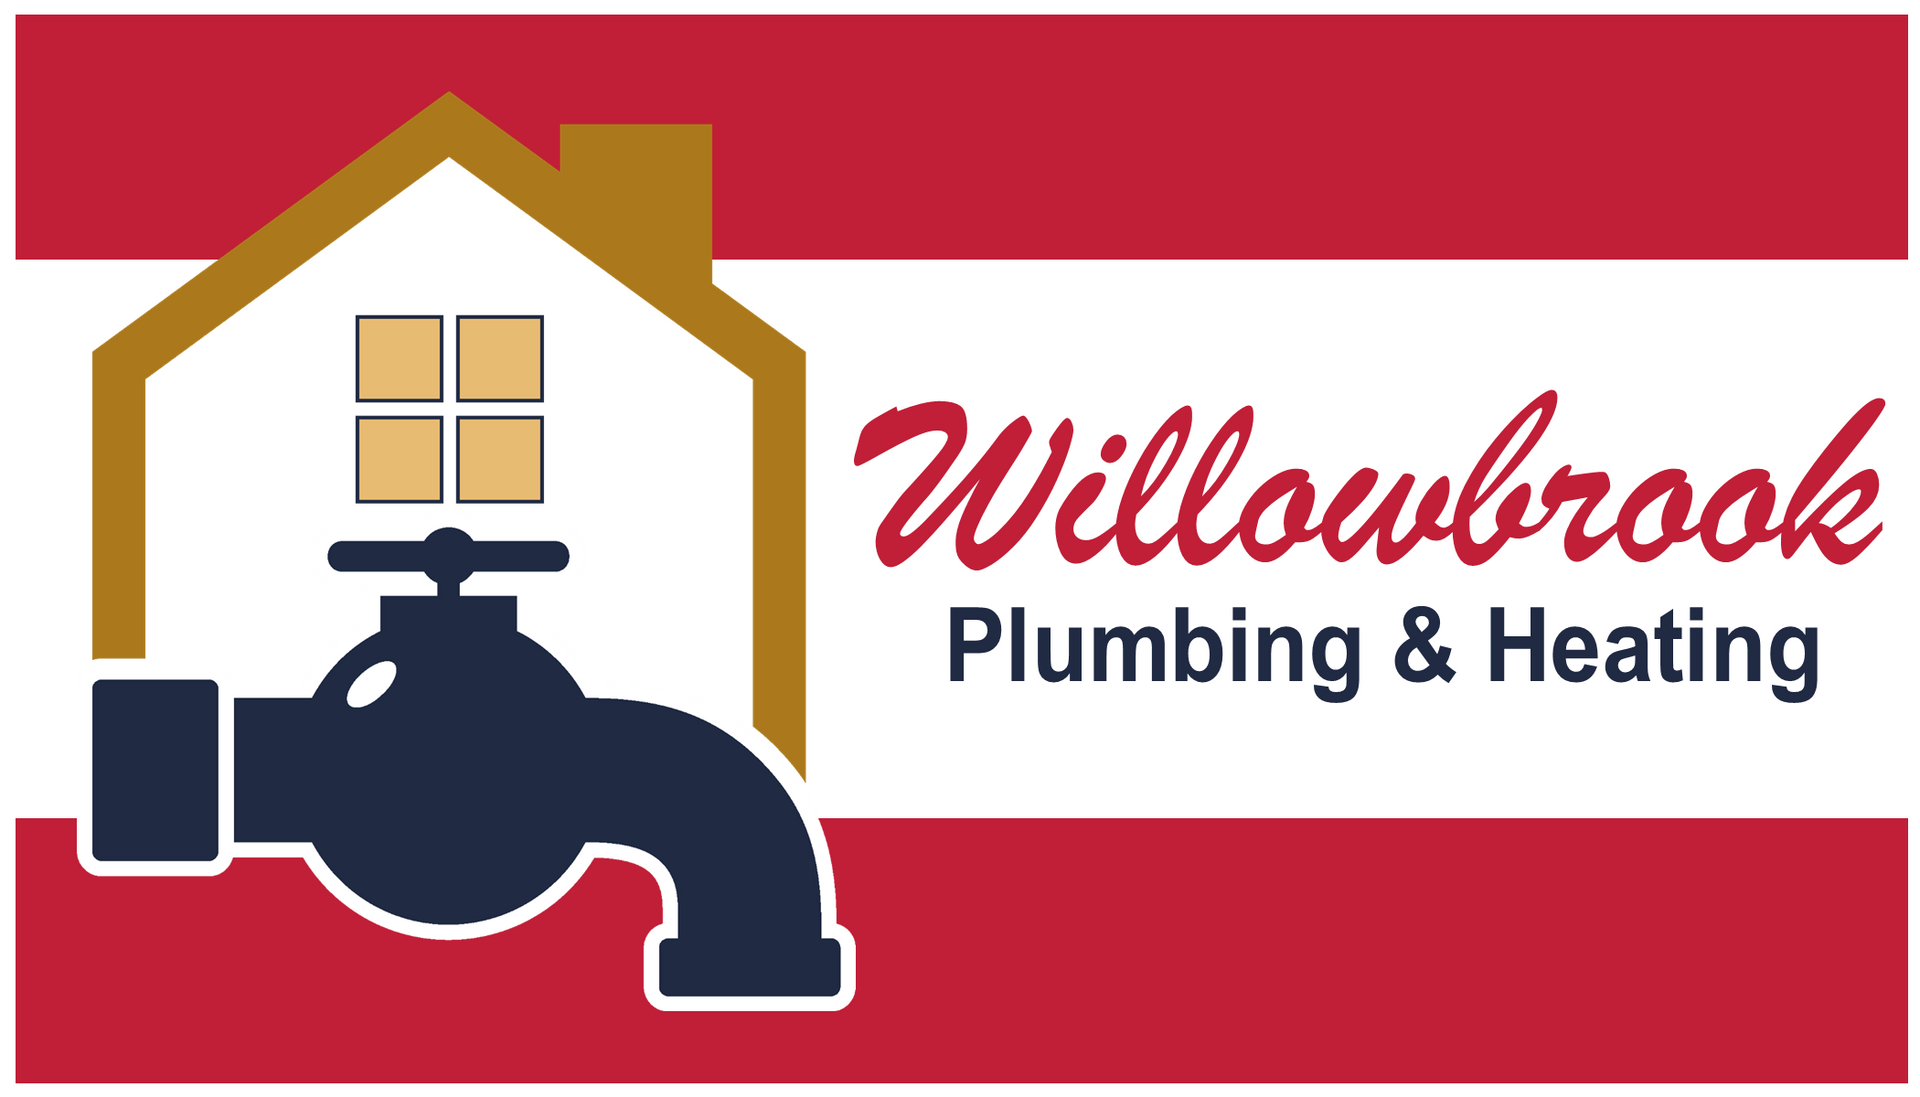 Willowbrook Plumbing & heating logo